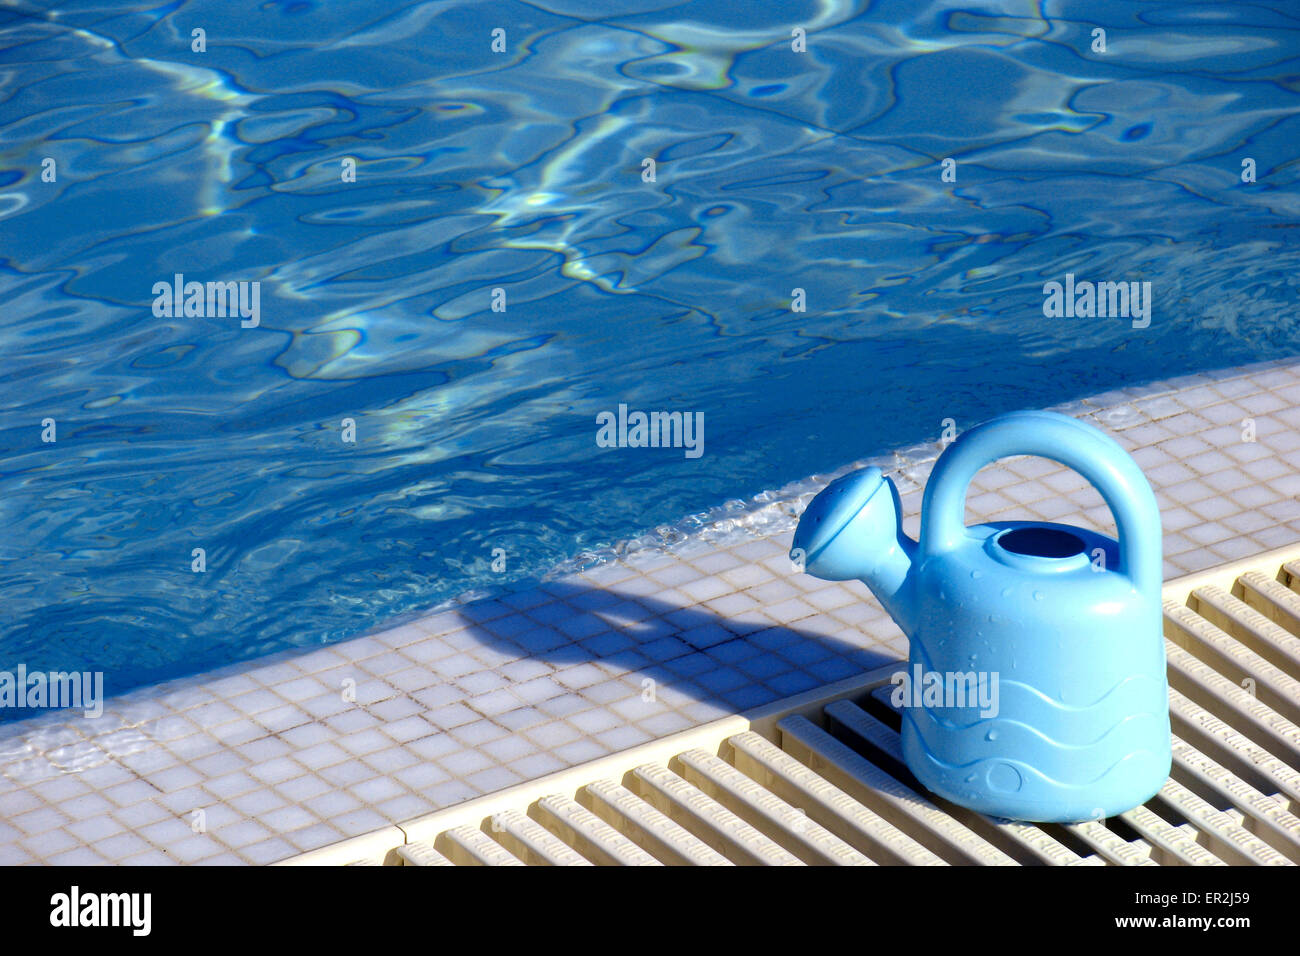 Aussen Pool Spielzeug Giesskanne Farbe Poolrand Wasser Blau Sommer Urlaub Freizeit Holiday Swimmingpool Konzepte Still Life Stock Photo